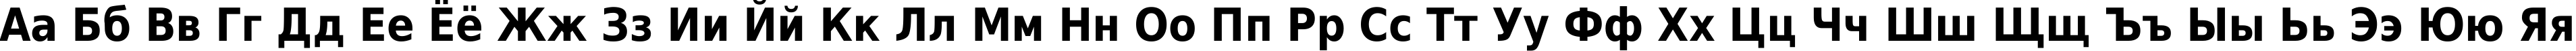 Пример написания русского алфавита шрифтом DejaVu Sans Condensed Bold